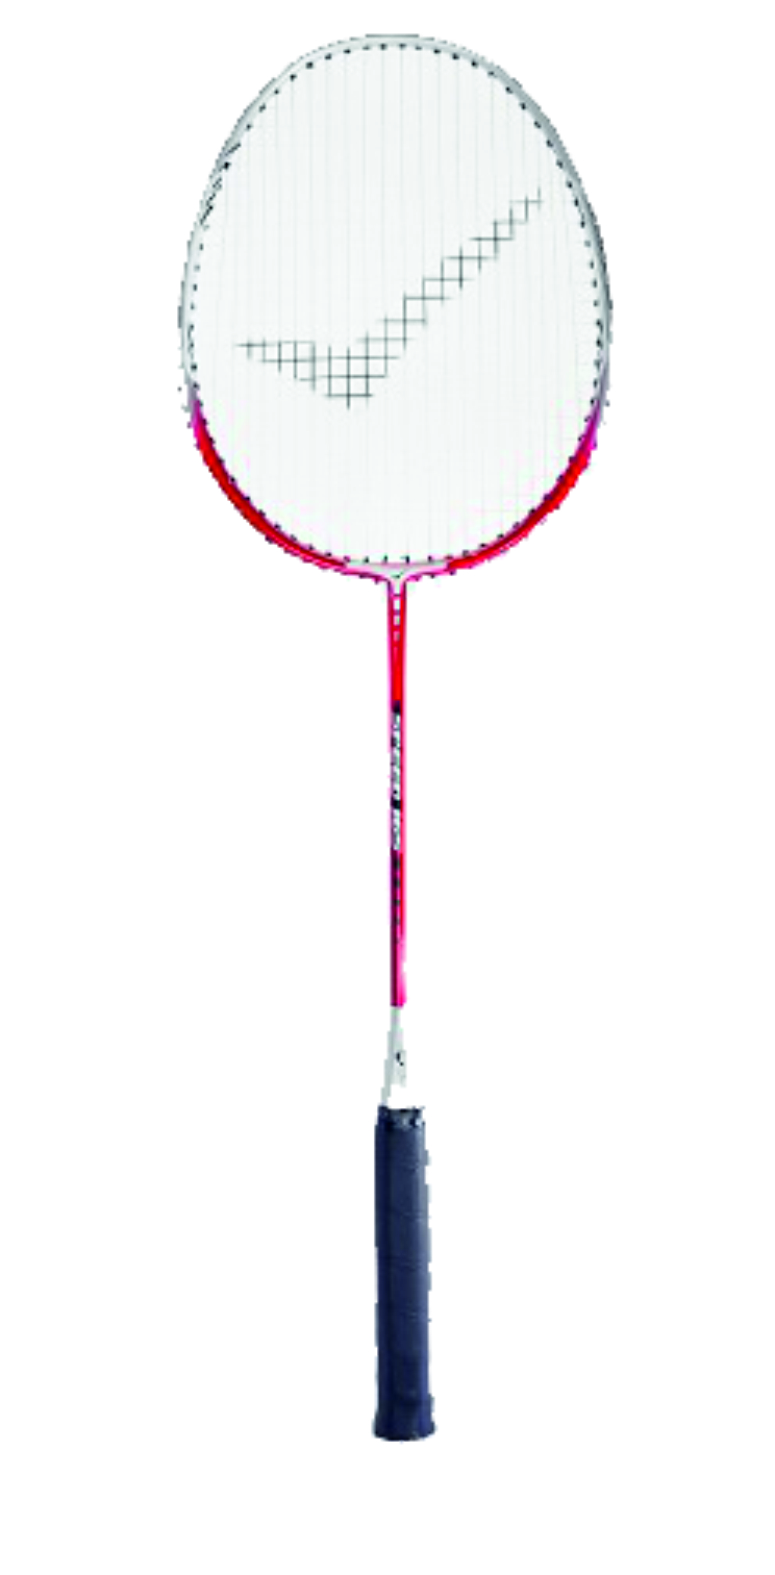 Rakieta do badmintona Speed 165 czerwony – główny